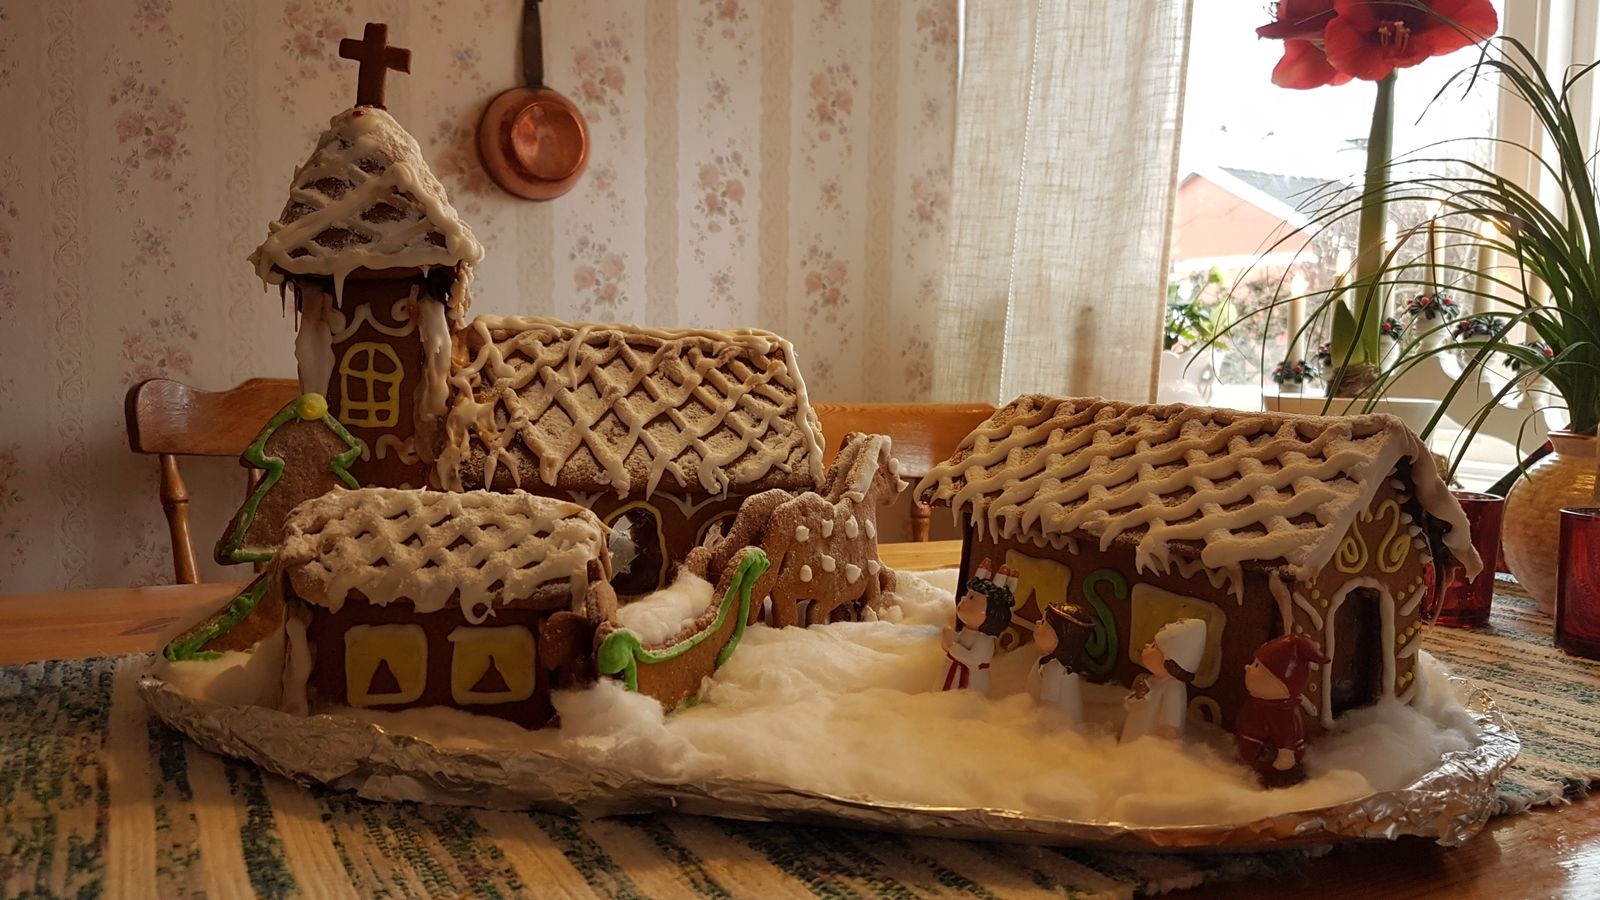 Ingrid Jonsson har skickat in en bild på en fin pepparkakskyrka och berättar: ”Jag och mitt barnbarn Emma har gjort pepparkakshus inför jul i många år. Årets har vi tänkt oss ska vara en luciamorgon i en kyrkby med kyrka, prästgård och klockargård.”